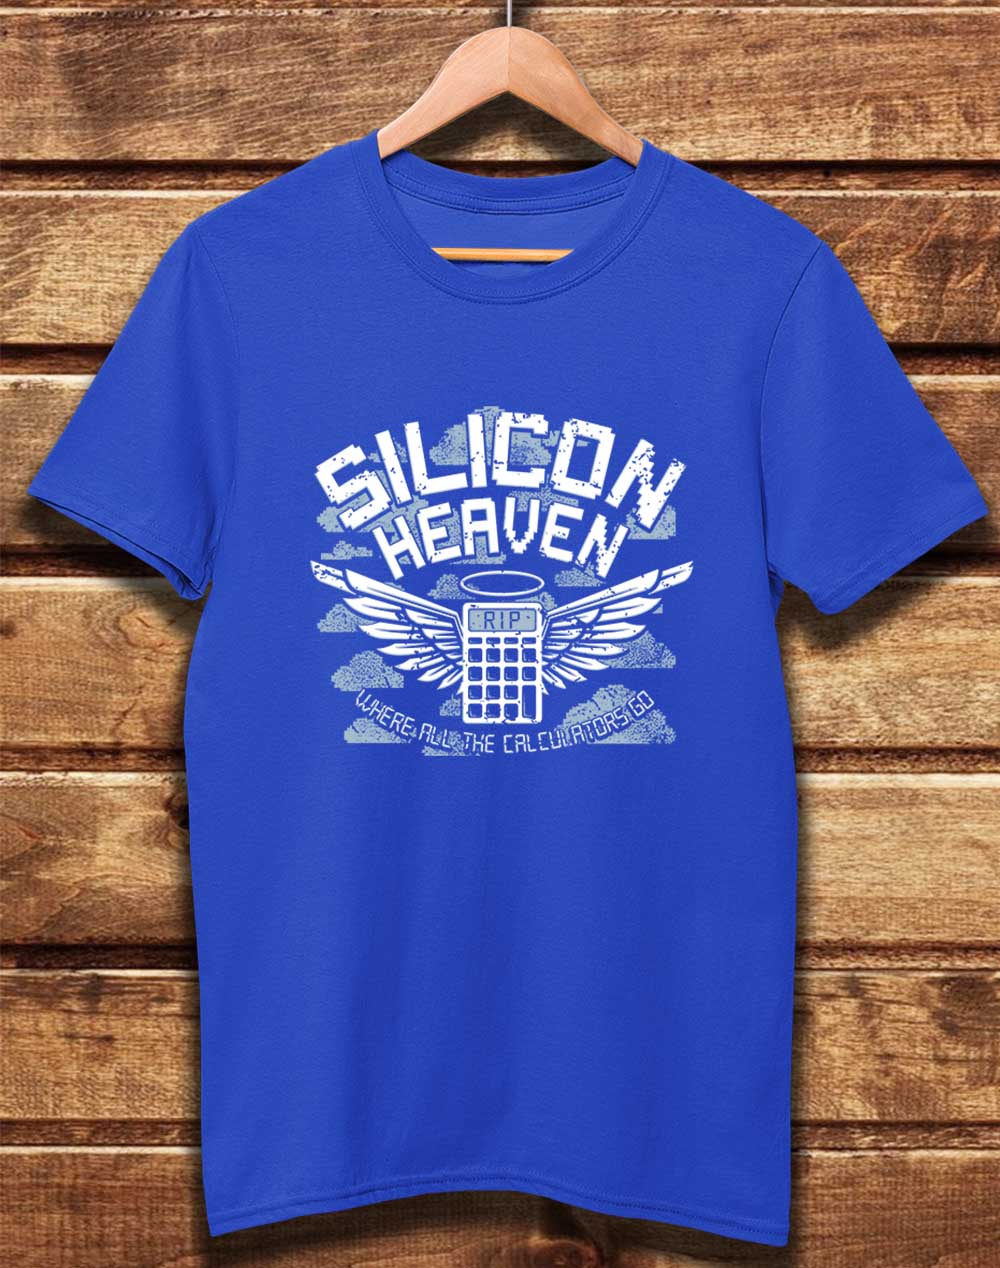 Bright Blue - DELUXE Silicon Heaven Organic Cotton T-Shirt